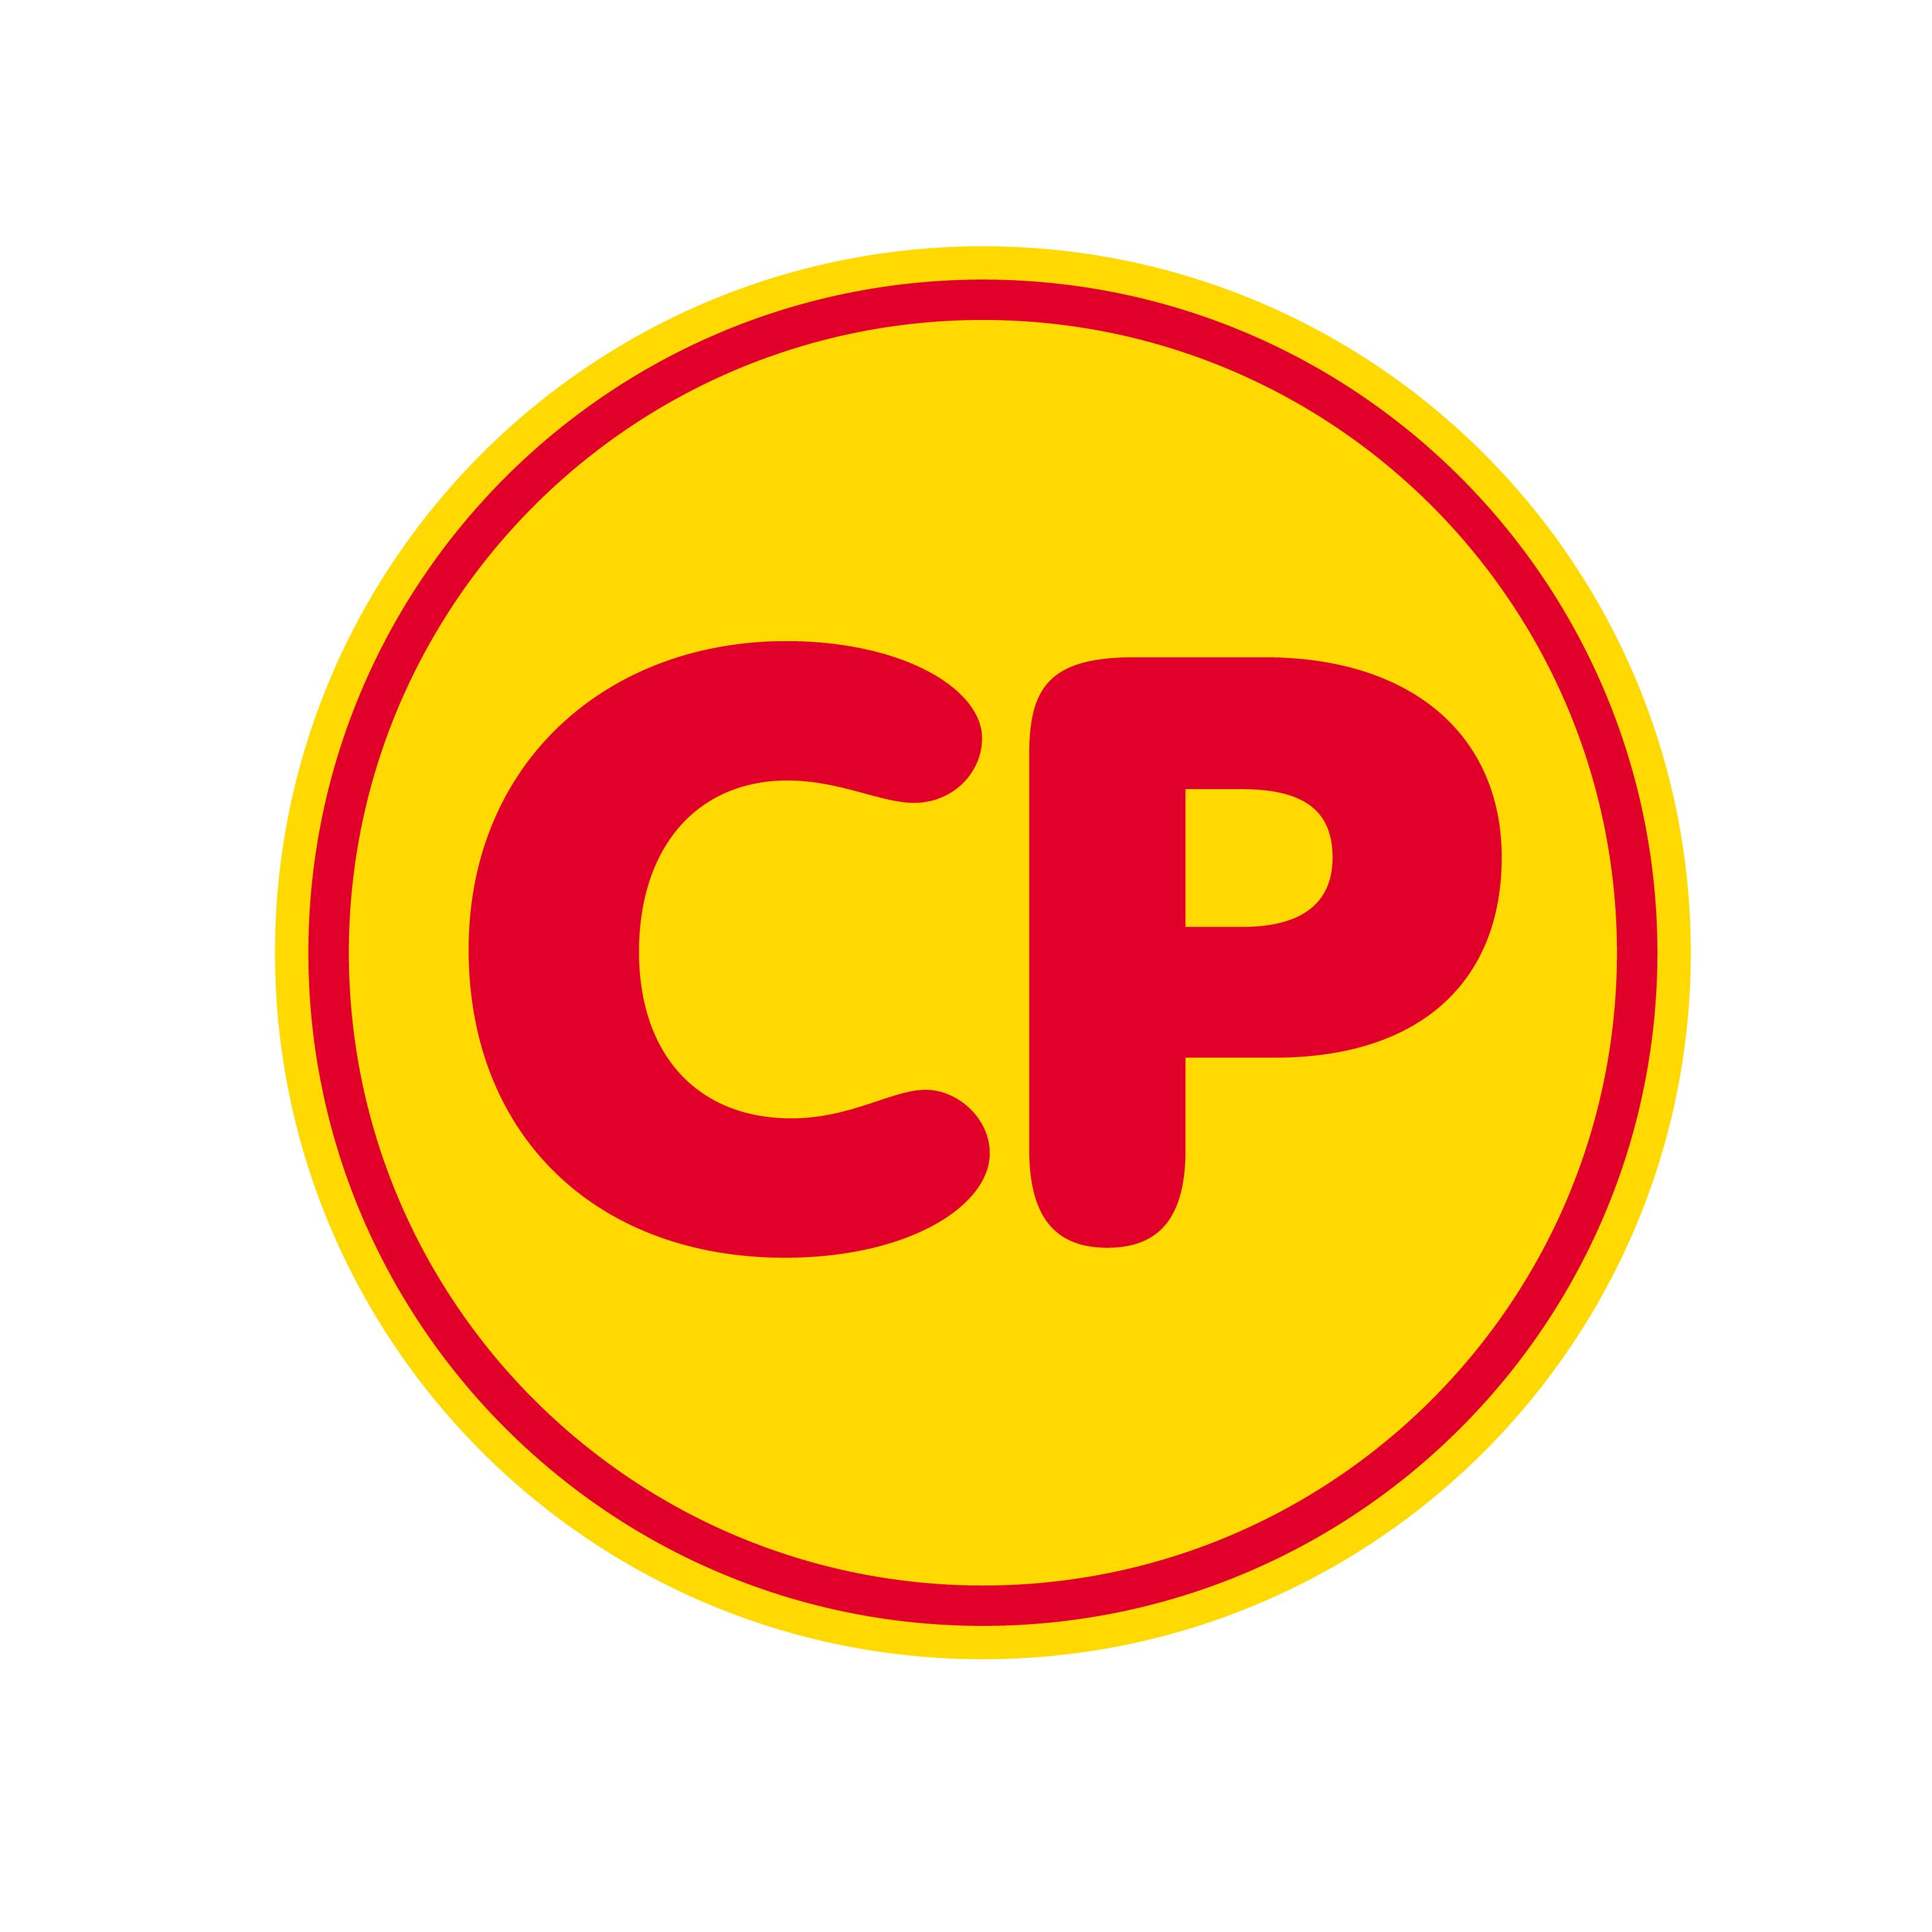 CPF Hong Kong Company Limited